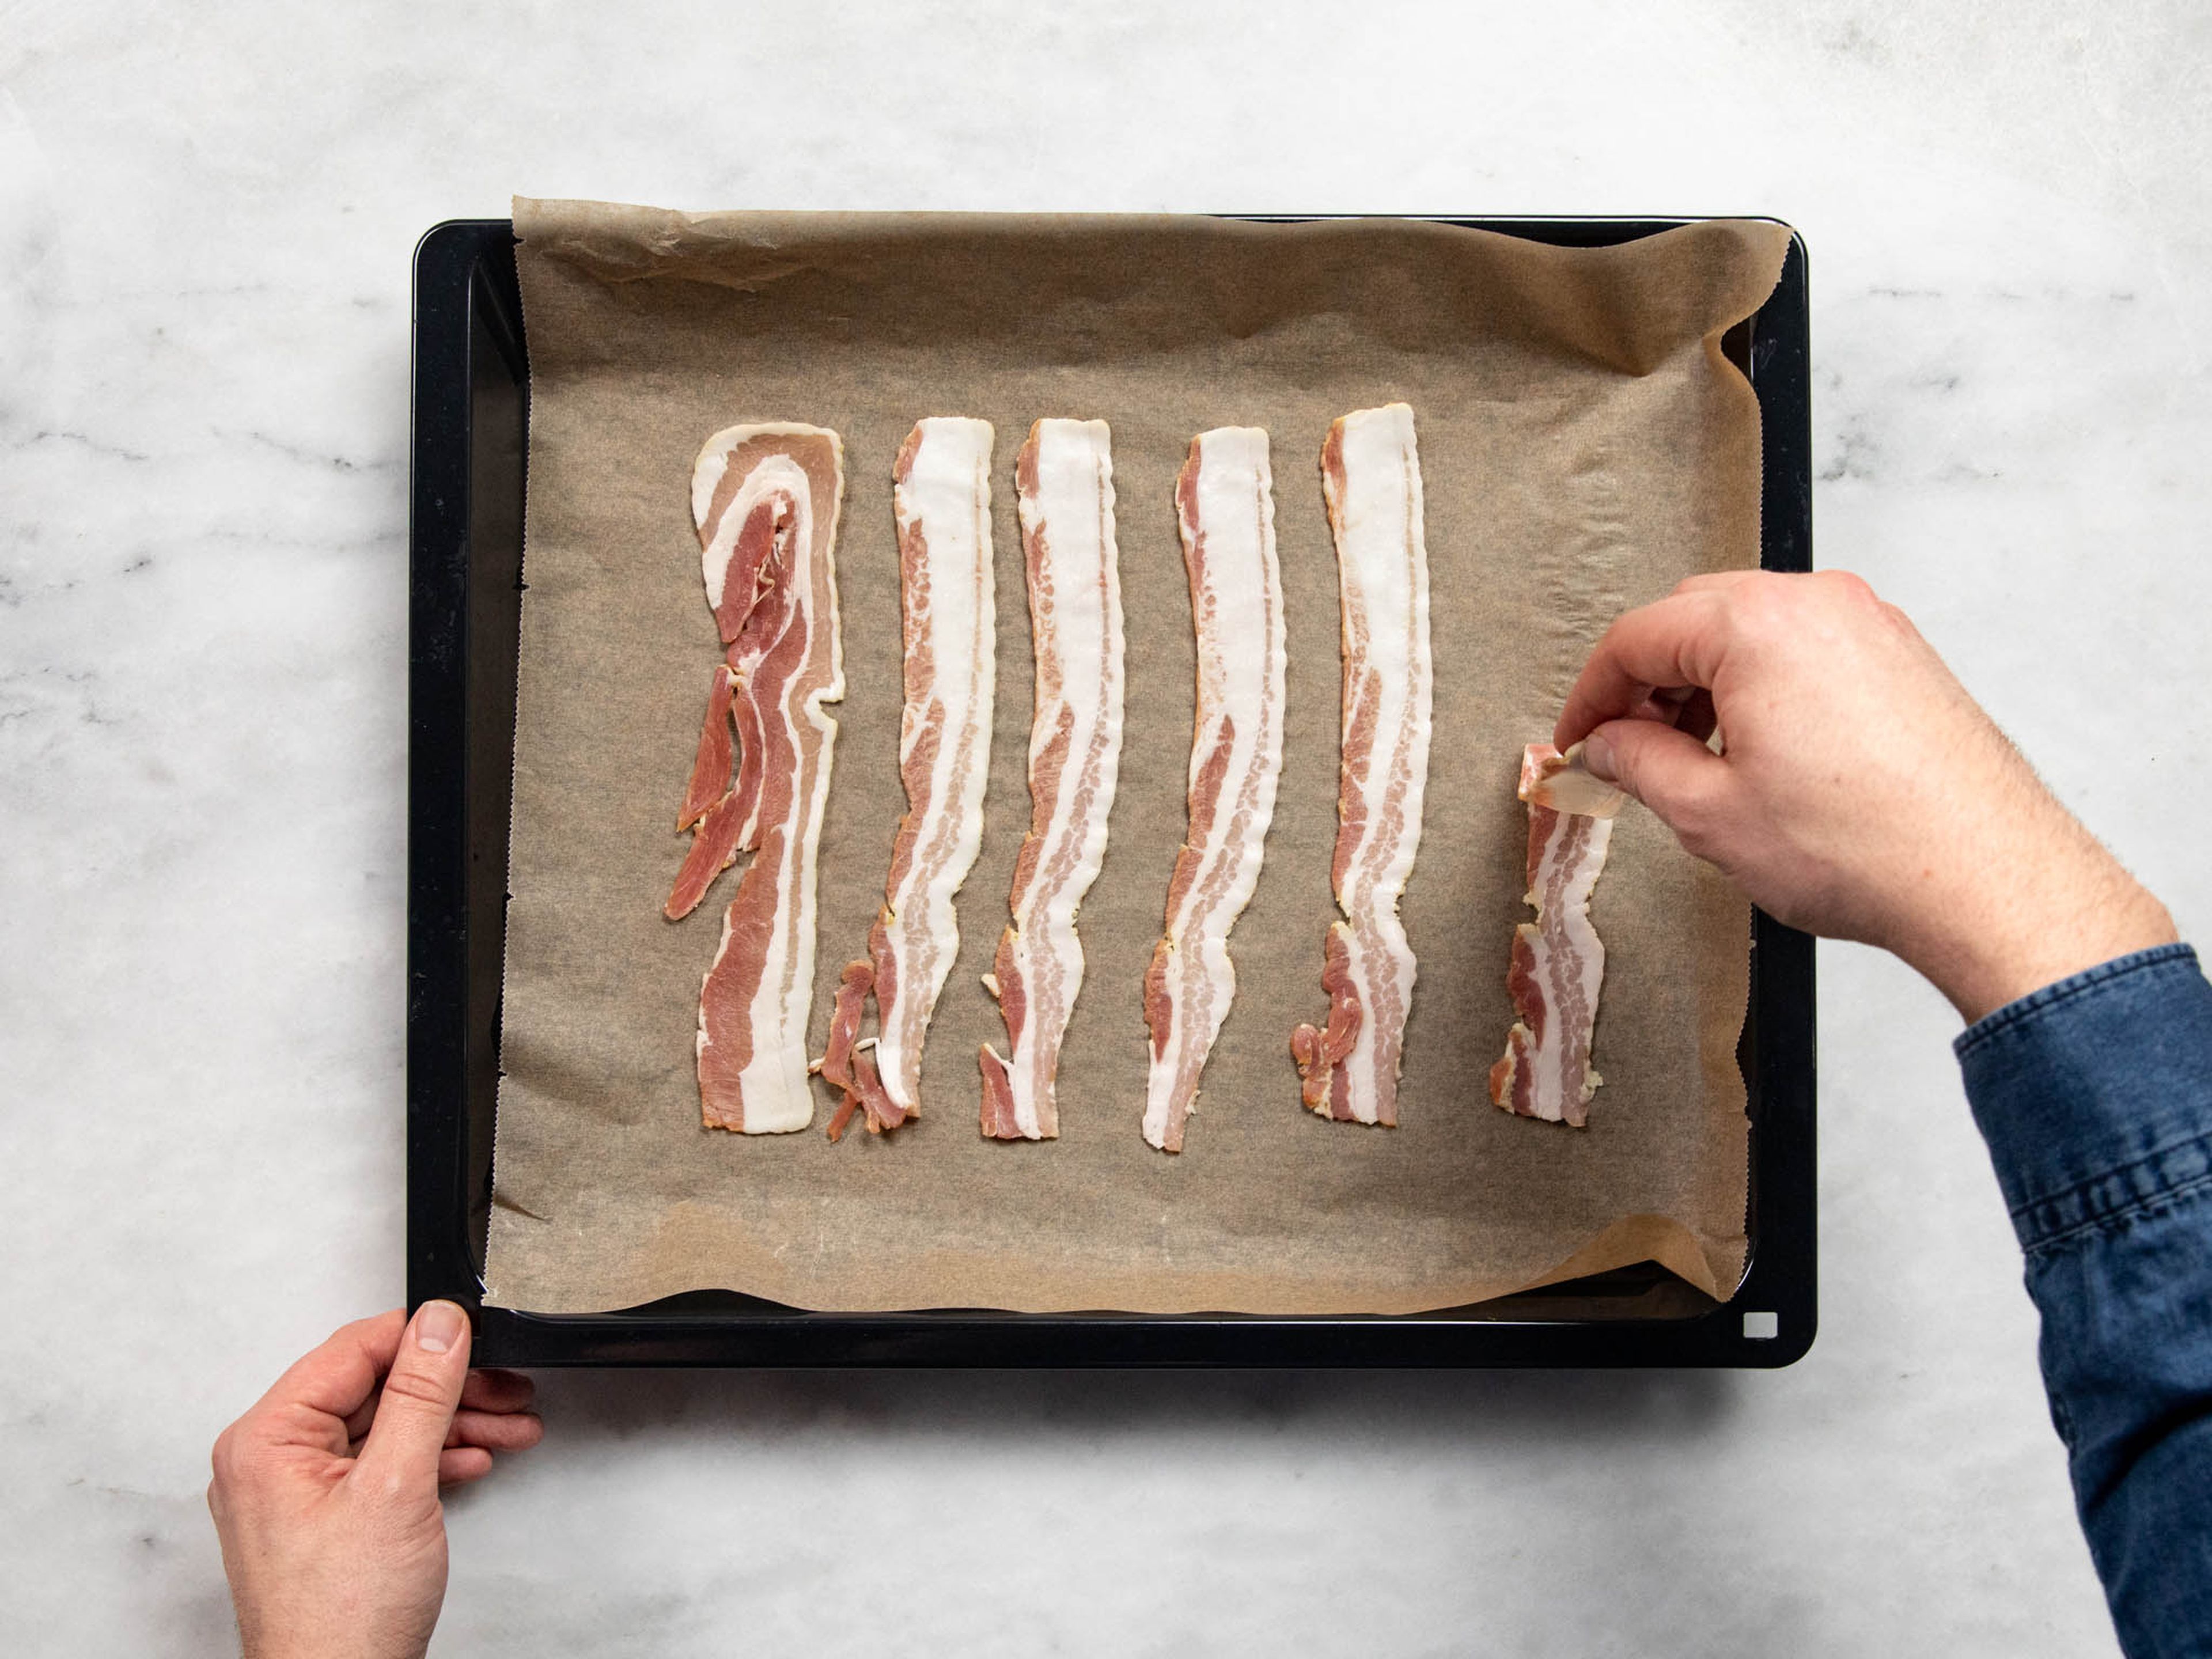 Den Backofen auf 160ºC vorheizen. Bacon auf Backpapier im Ofen für ca. 10 Min. knusprig backen. Die Eier in einem Topf mit kochendem Wasser für ca. 8 Min. kochen und dann in einer Schüssel mit kaltem Wasser abkühlen lassen.